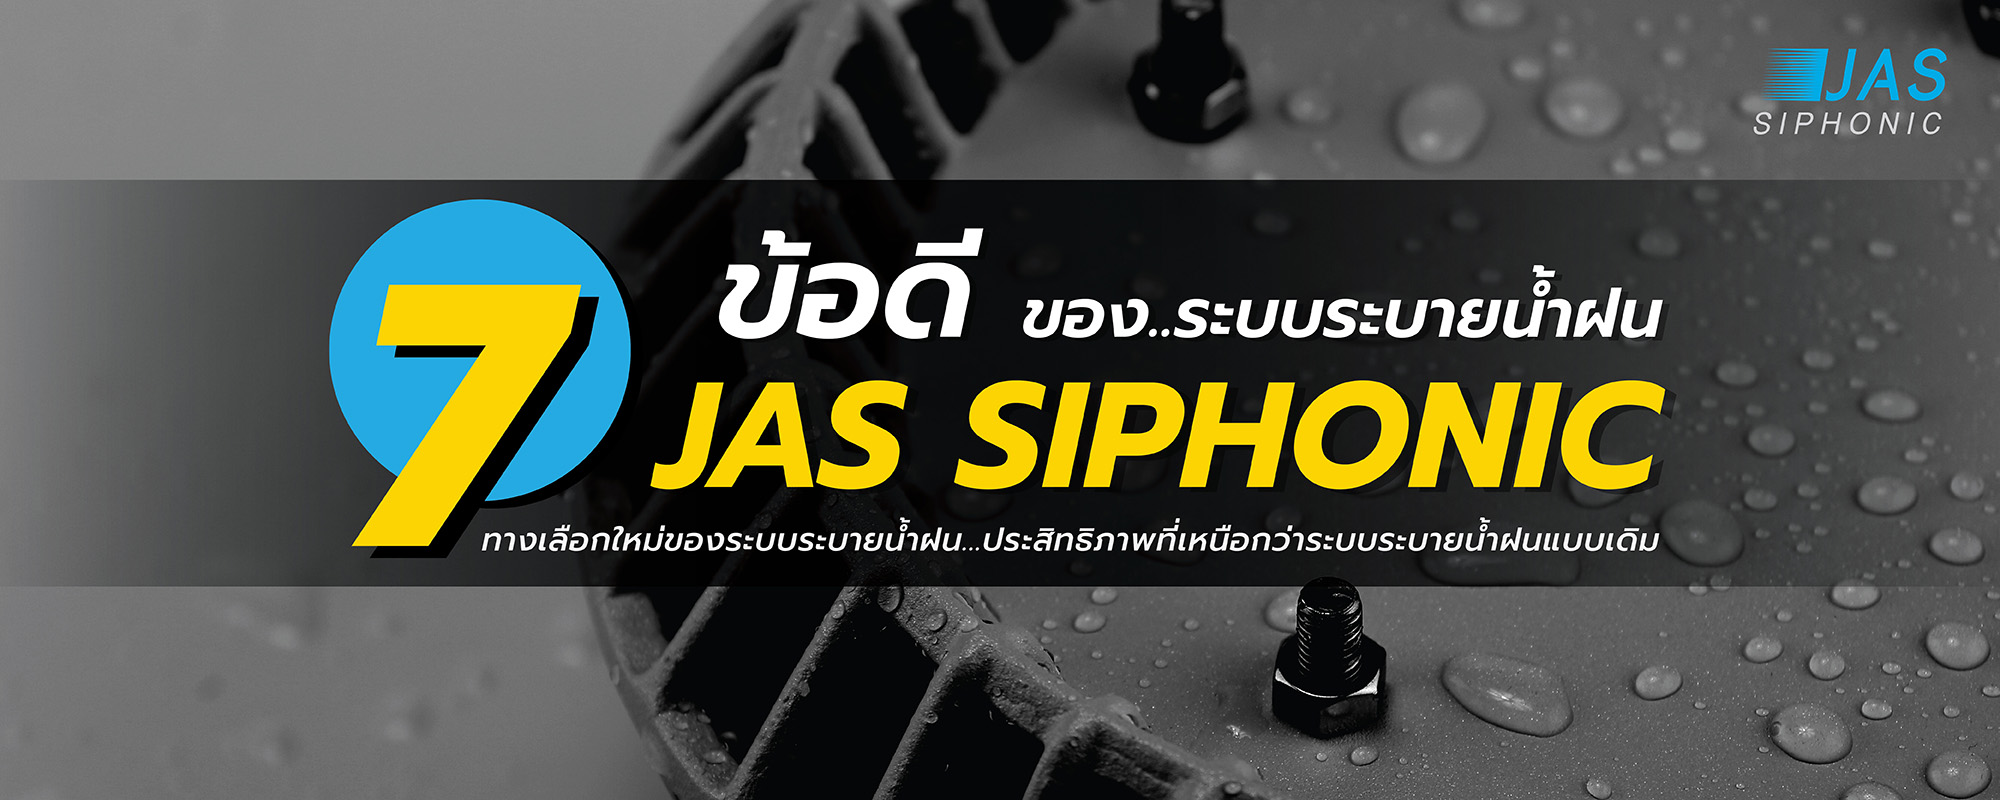 7ข้อดีระบบระบายน้ำฝน JAS Siphonic